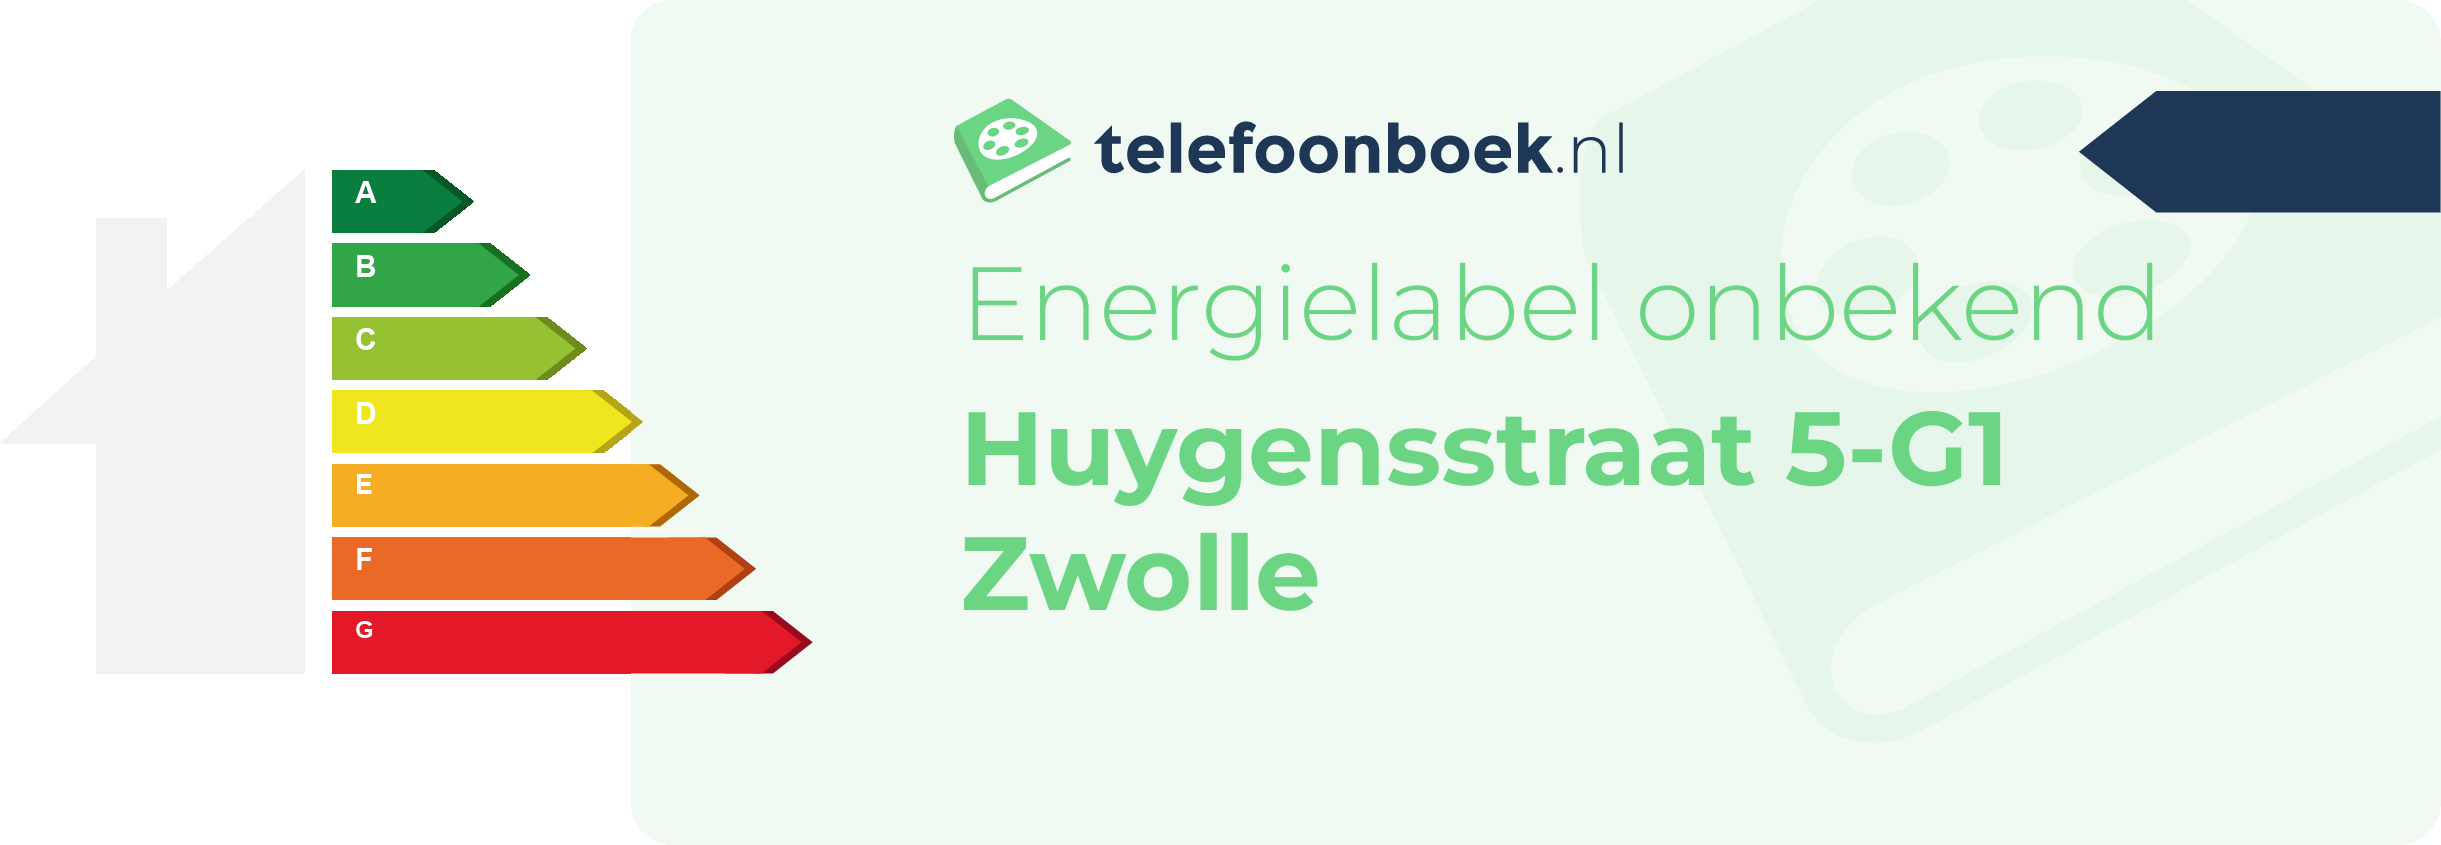 Energielabel Huygensstraat 5-G1 Zwolle